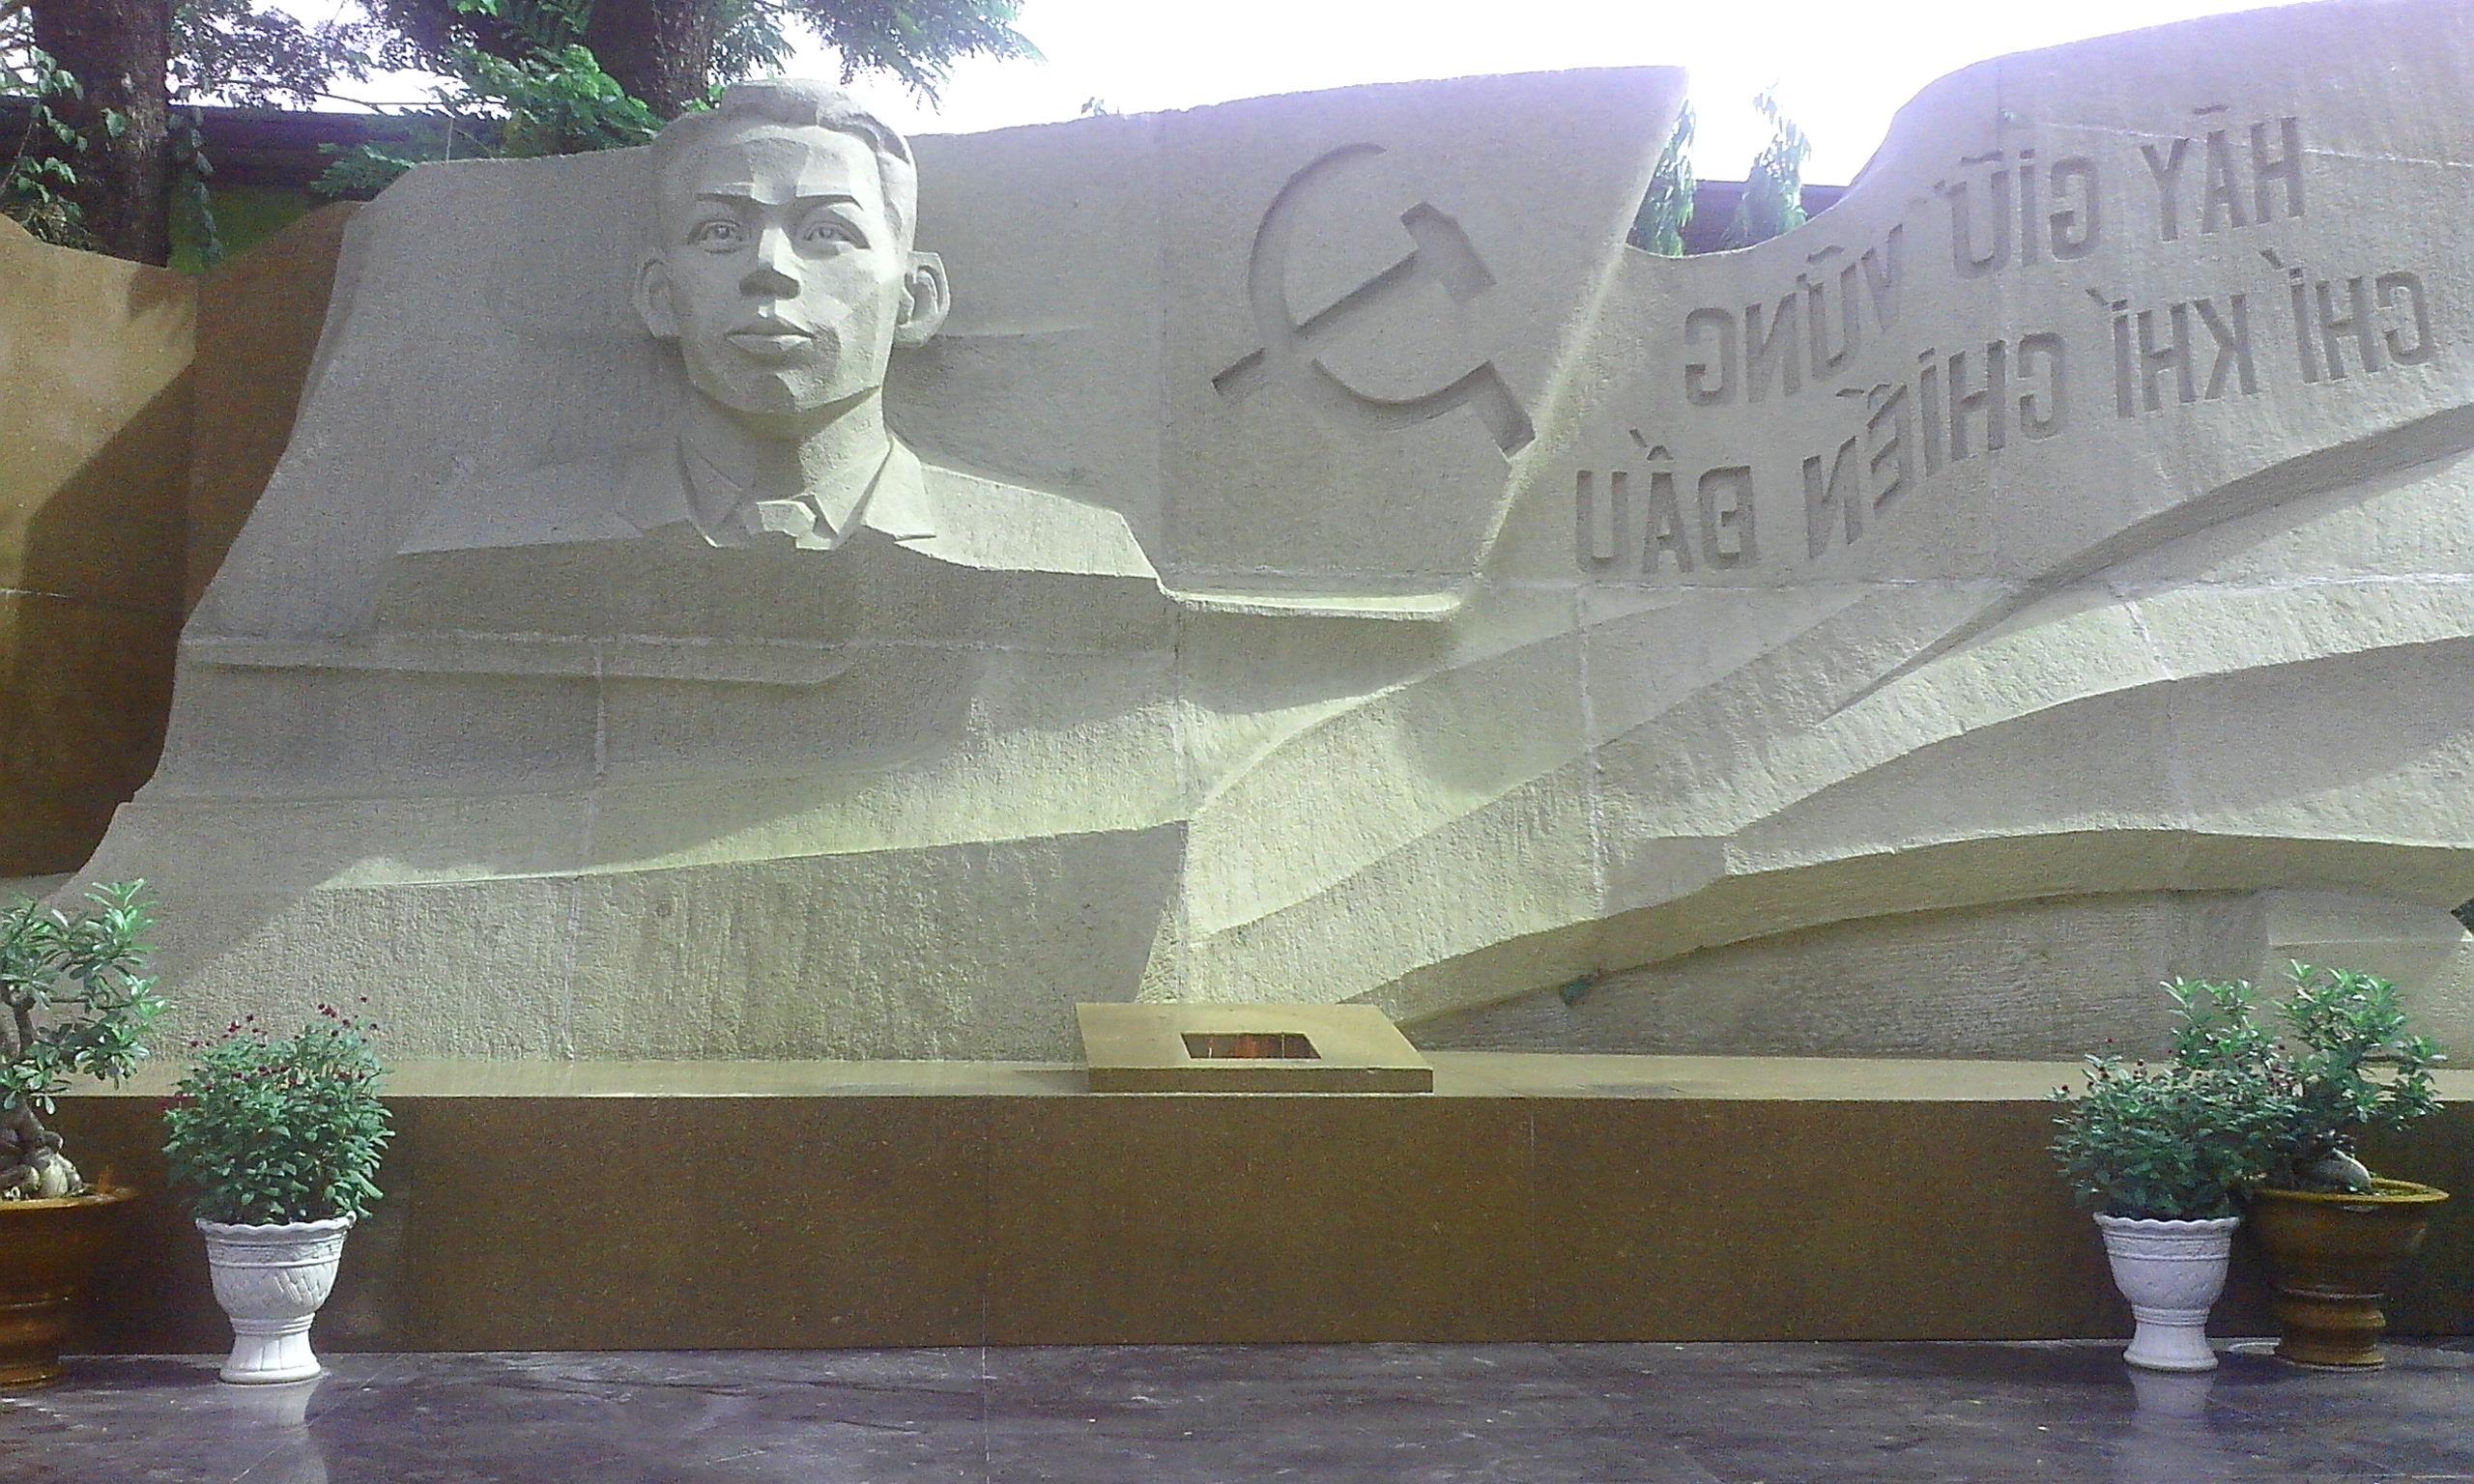  image of Tran Phu monument at Le Thi Rieng park